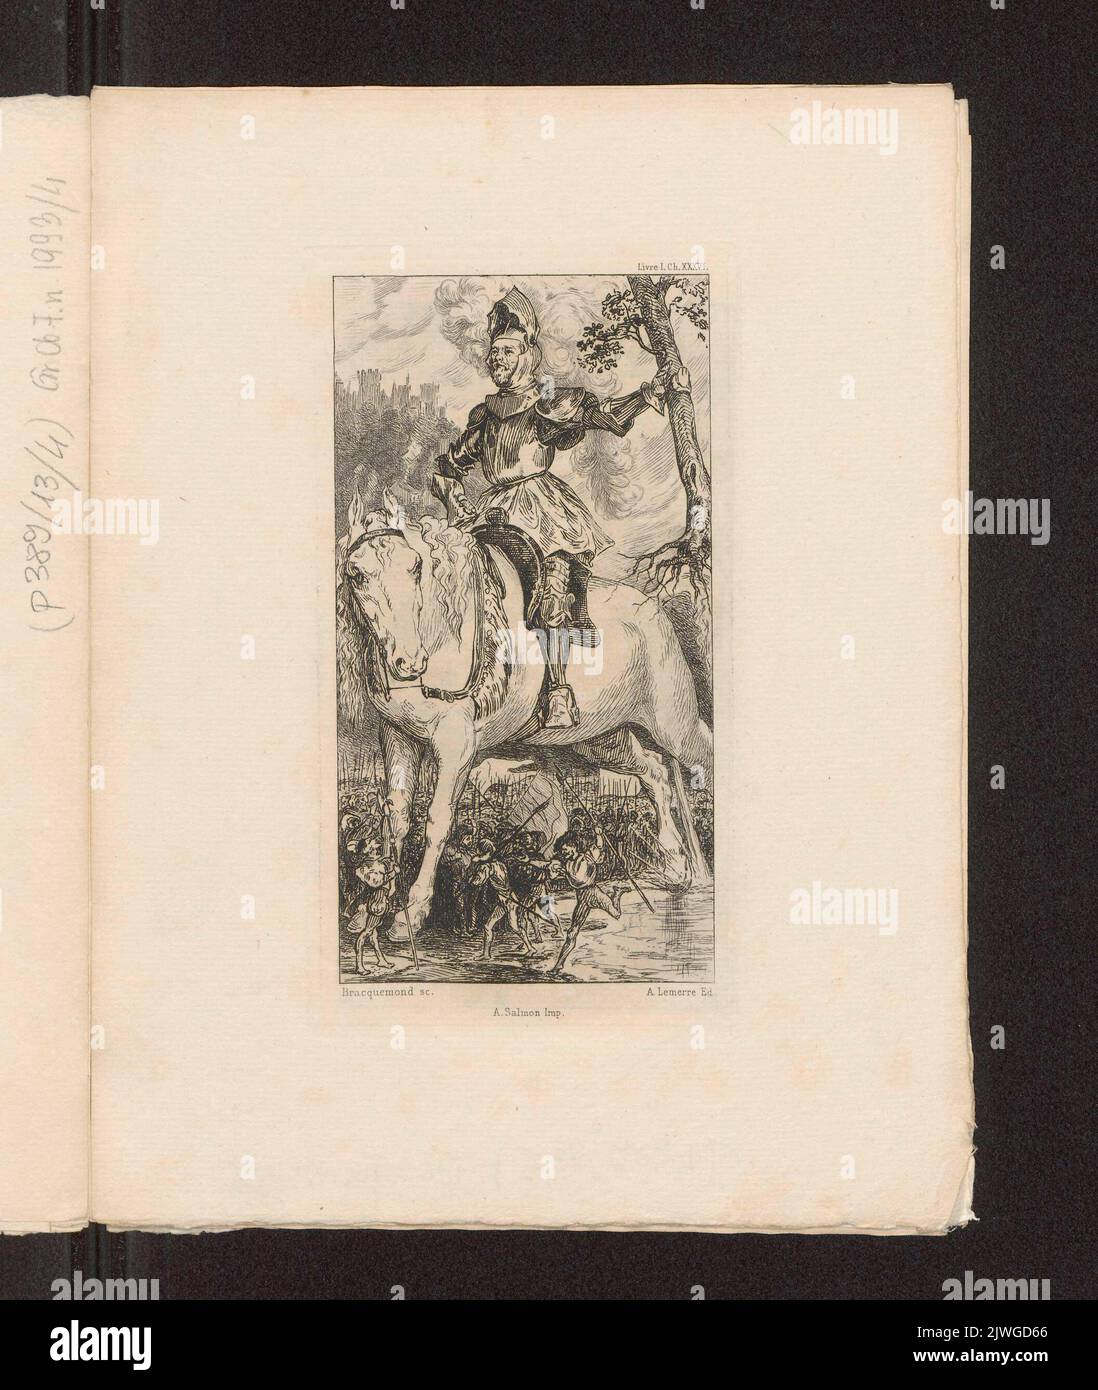 La jument `se laschant le ventre`, Livre I , ch. XXXVI. Bracquemond, Félix (1833-1914), graphic artist, Lemerre, Alphonse (1838-1912), publisher, Salmon, Alfred (1825-ca 1894), printer of graphic prints Stock Photo